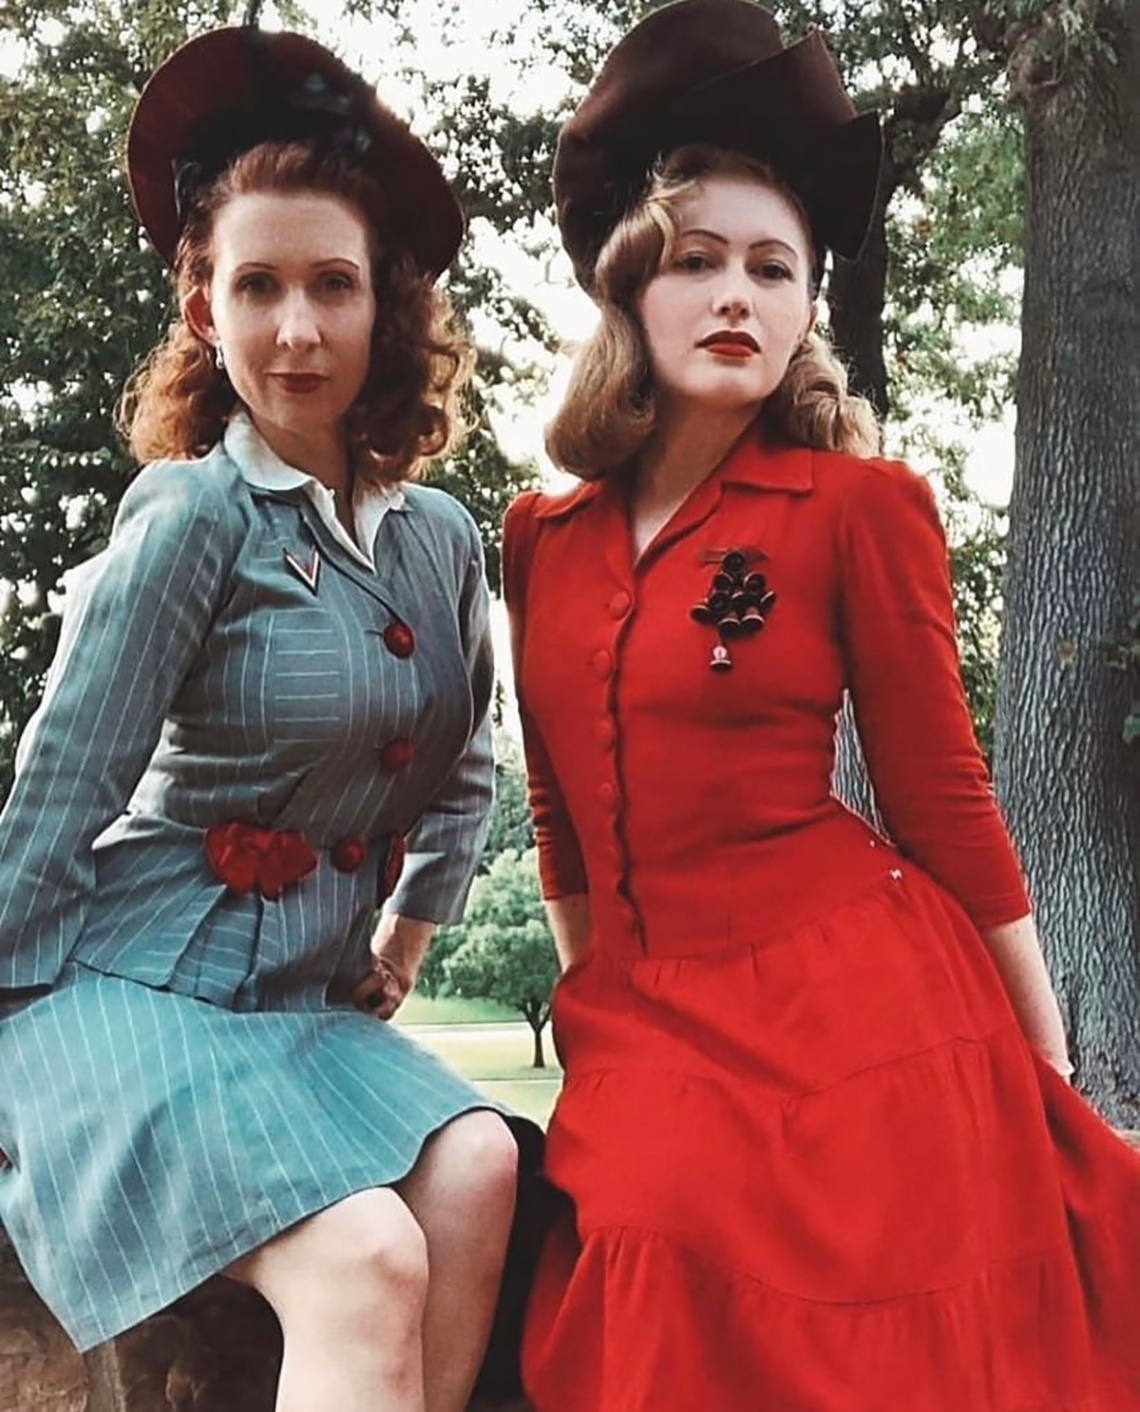 1940s fashion women Niche Utama Home Dallas Women Living in s Time Warp Showcase $, Clothing